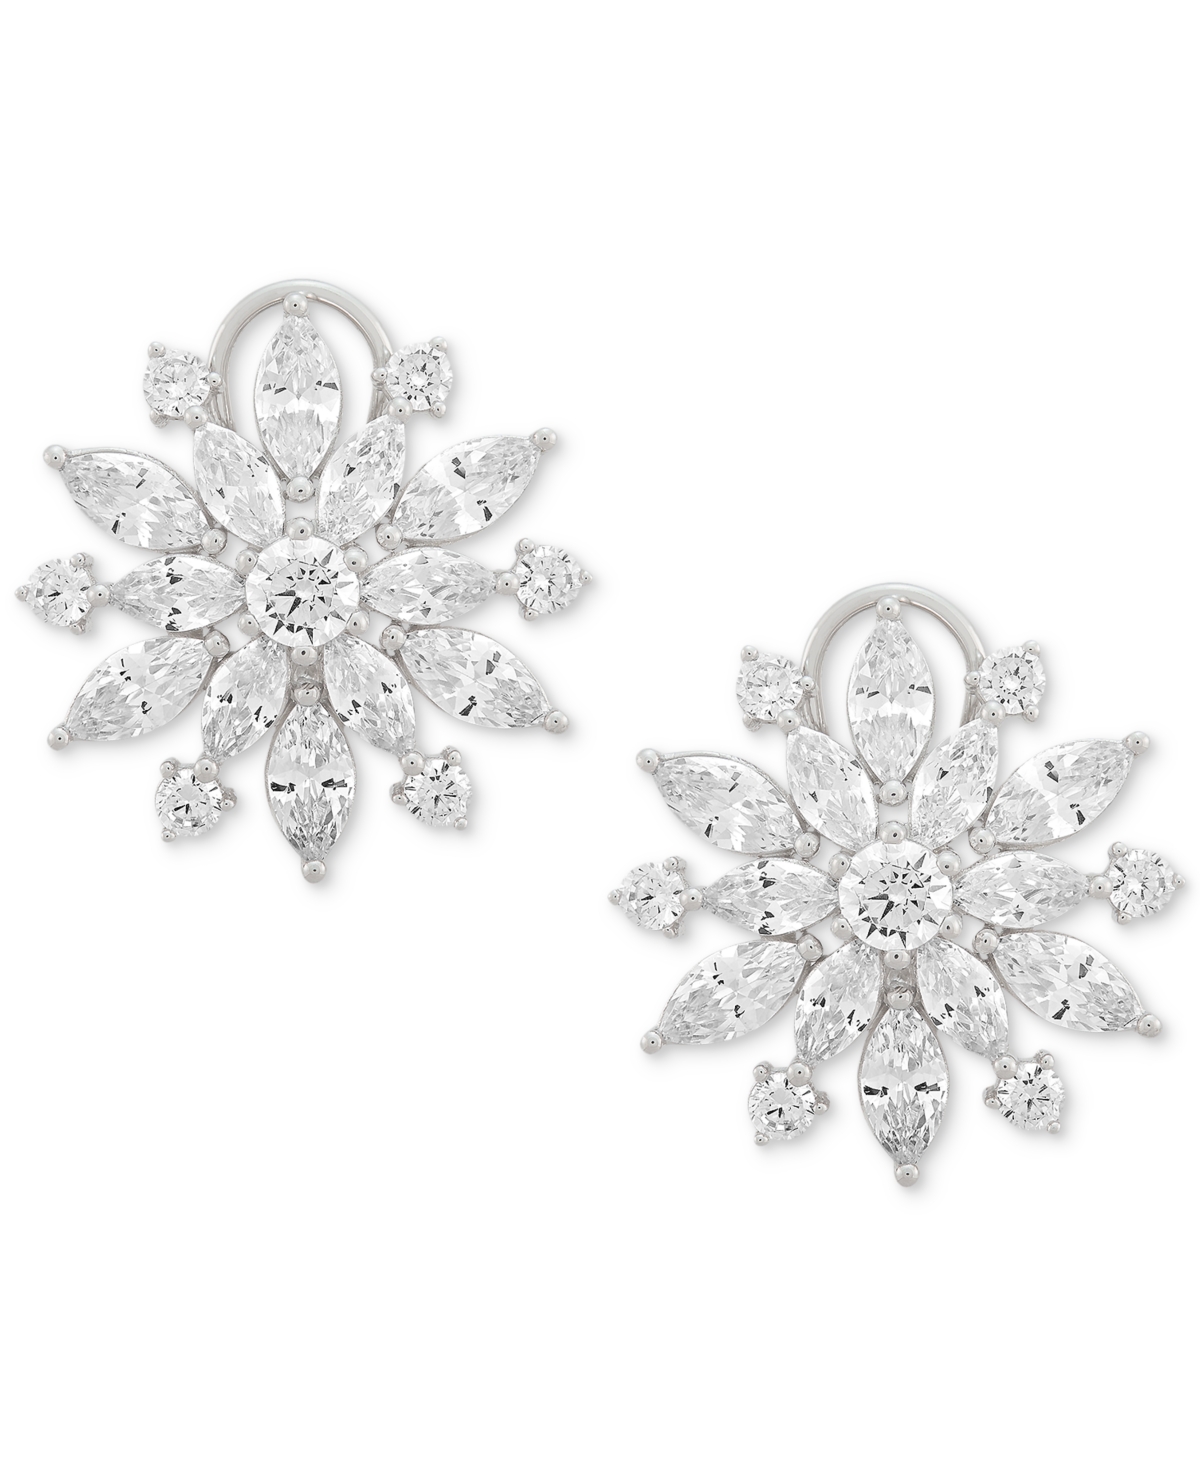 Cubic Zirconia Flower Statement Earrings in Sterling Silver - Sterling Silver